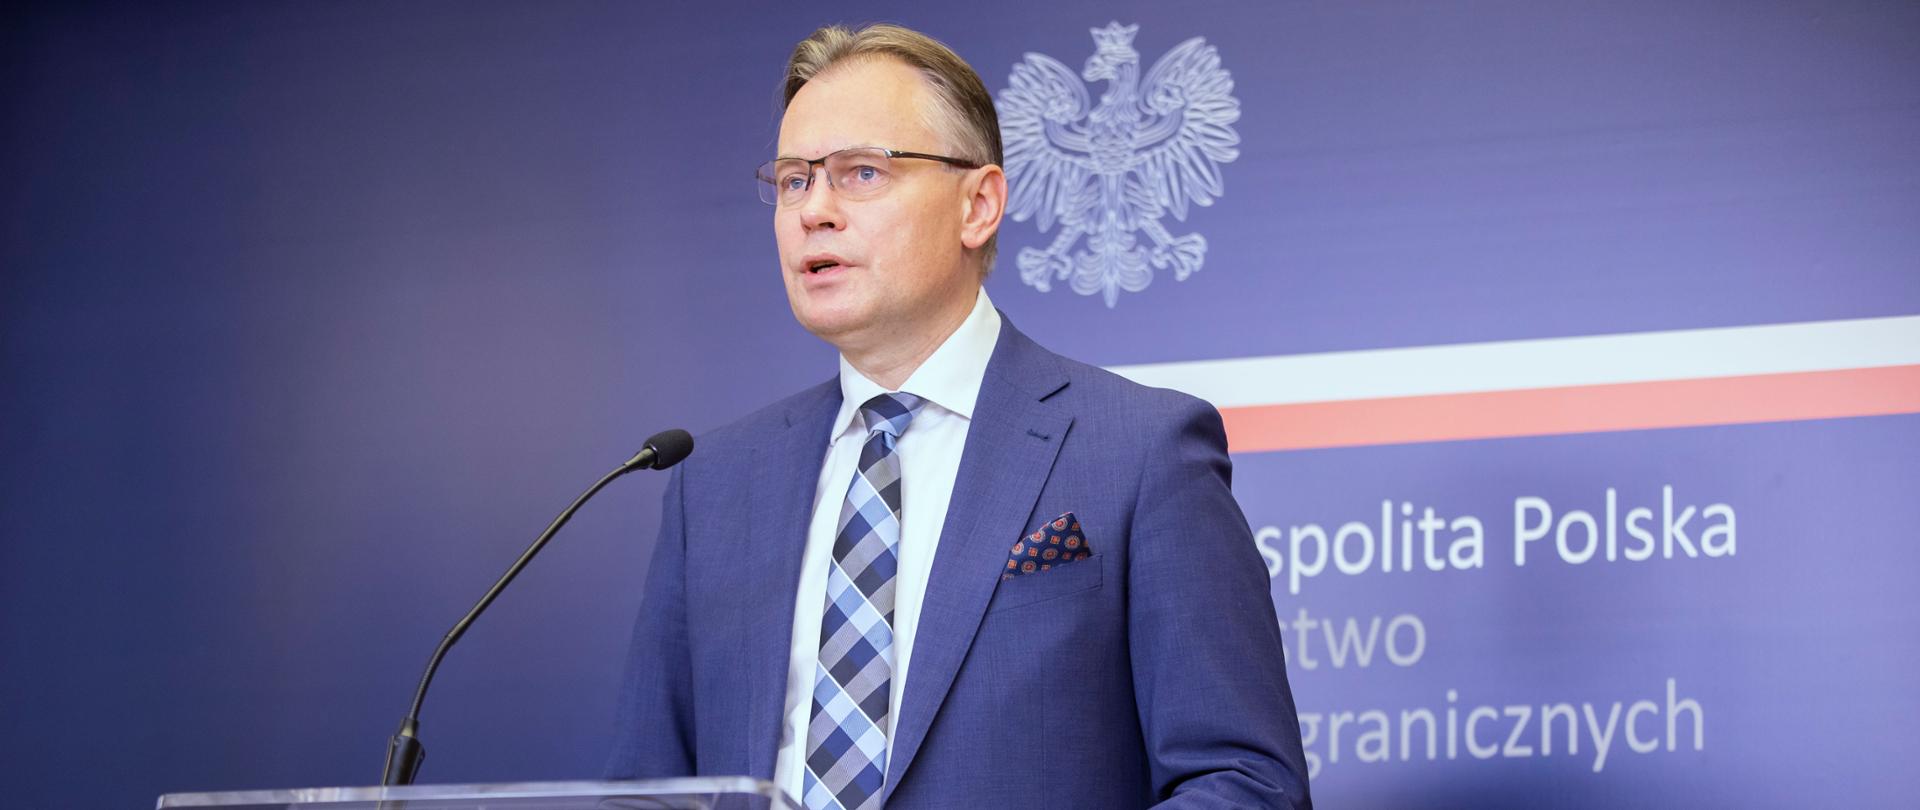 Secretary of State Arkadiusz Mularczyk